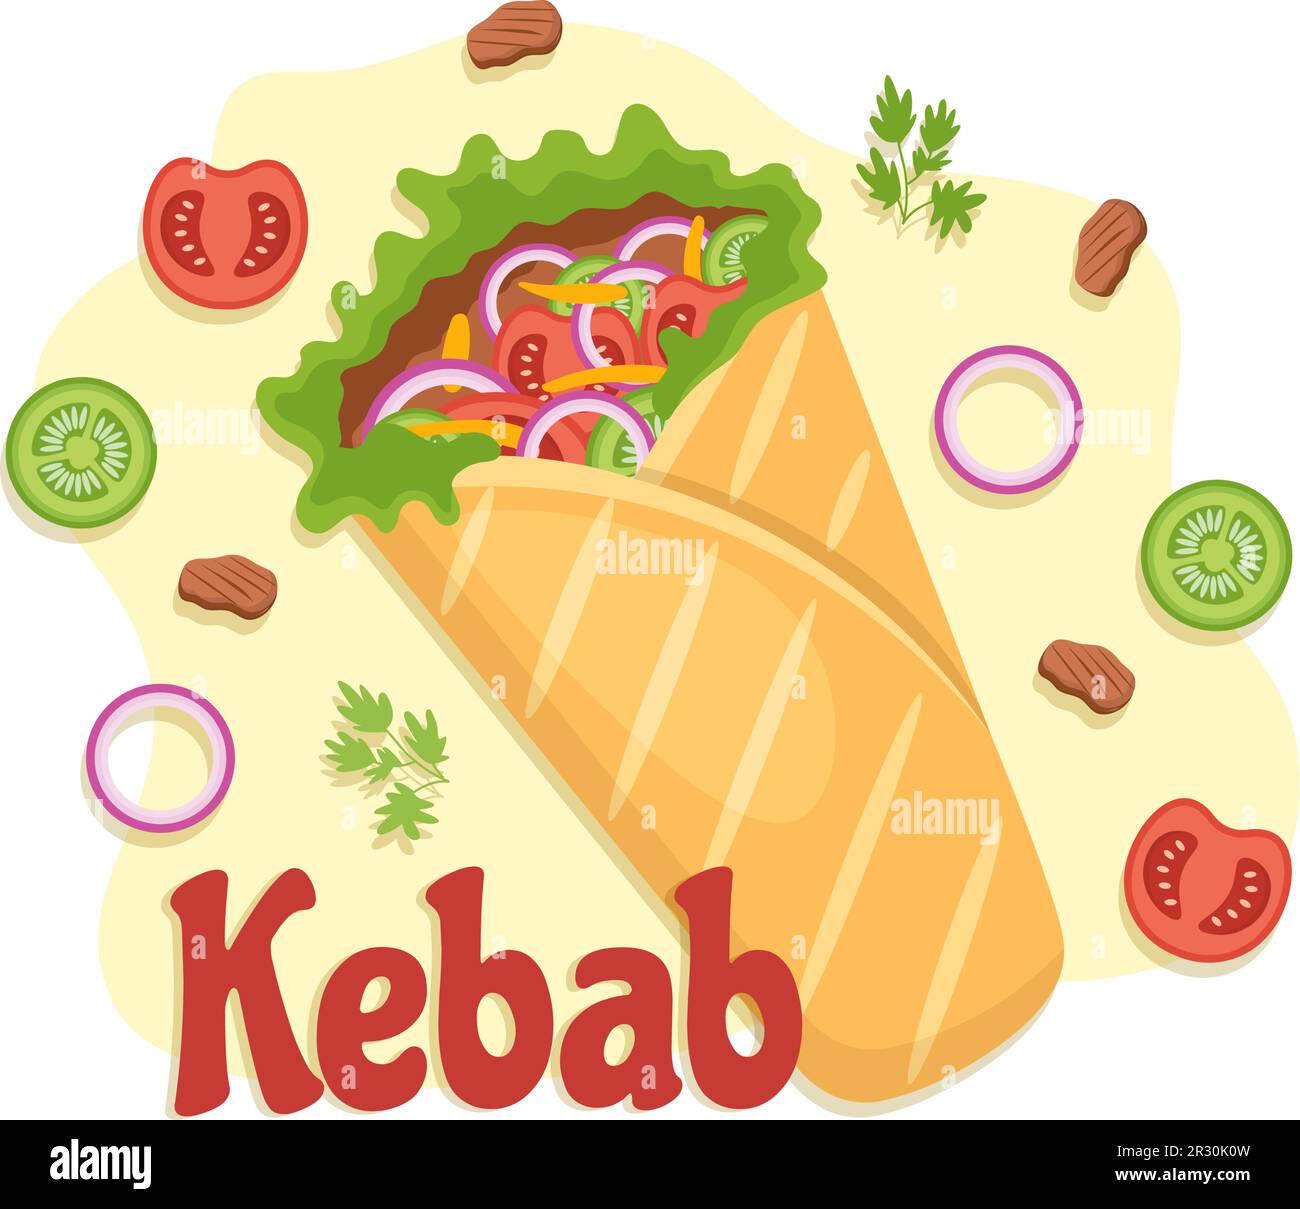 Kebab-Vektor-Illustration mit Füllung von Hähnchen- oder Rindfleisch, Salat und Gemüse in Brot, Tortilla Wrap in flachen, handgezeichneten Zeichentrickschablonen Stock Vektor